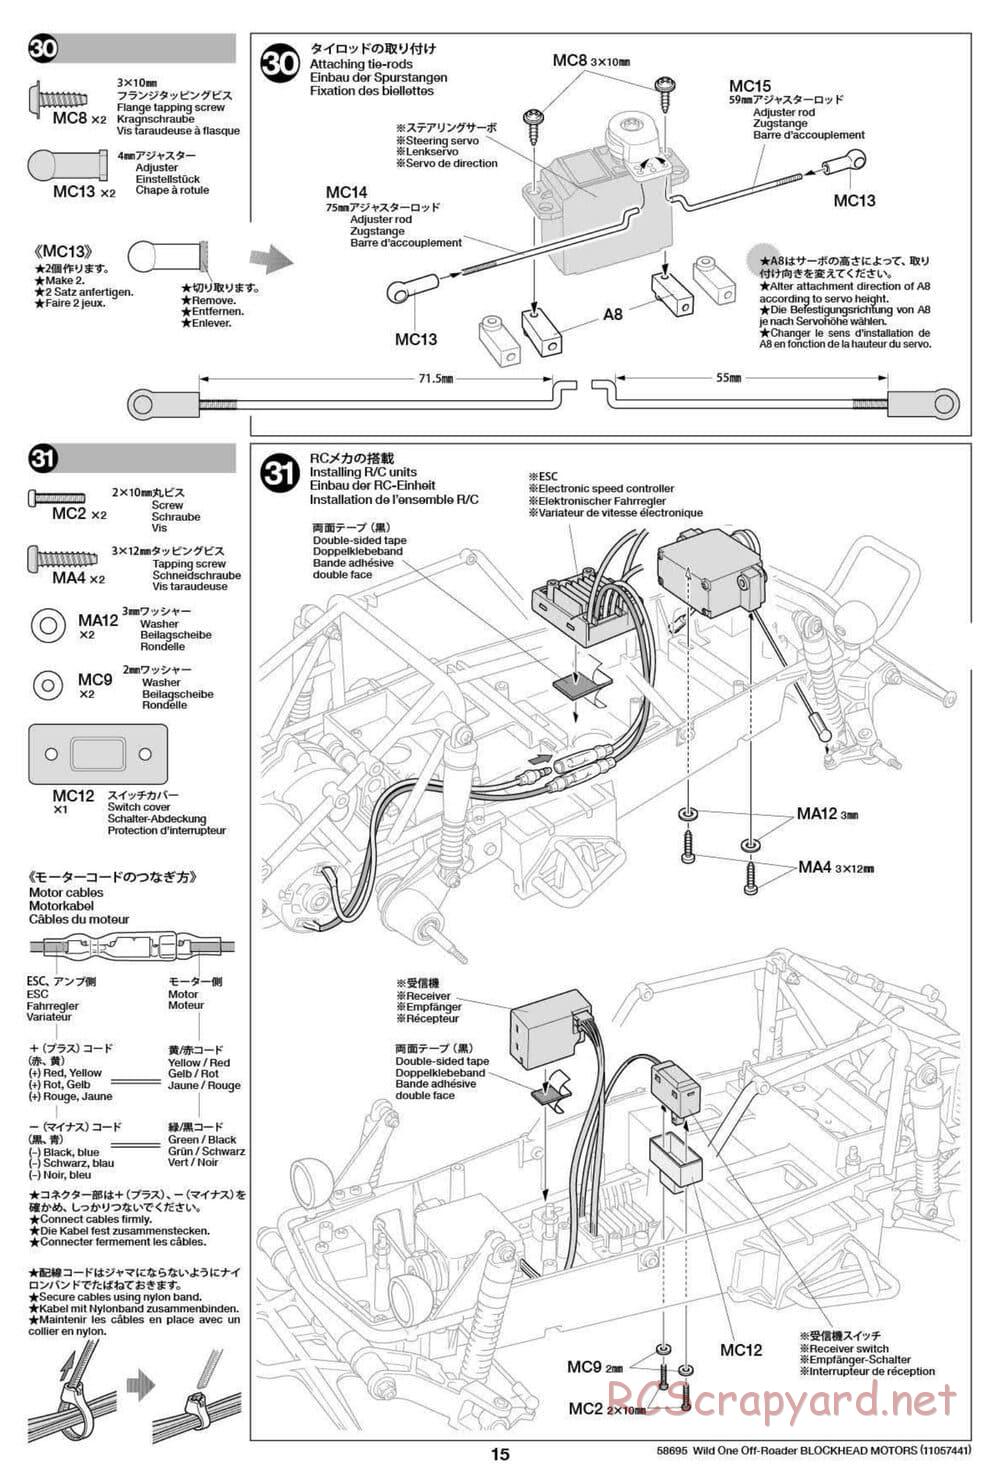 Tamiya - Wild One Off Roader Blockhead Motors - FAV Chassis - Manual - Page 15